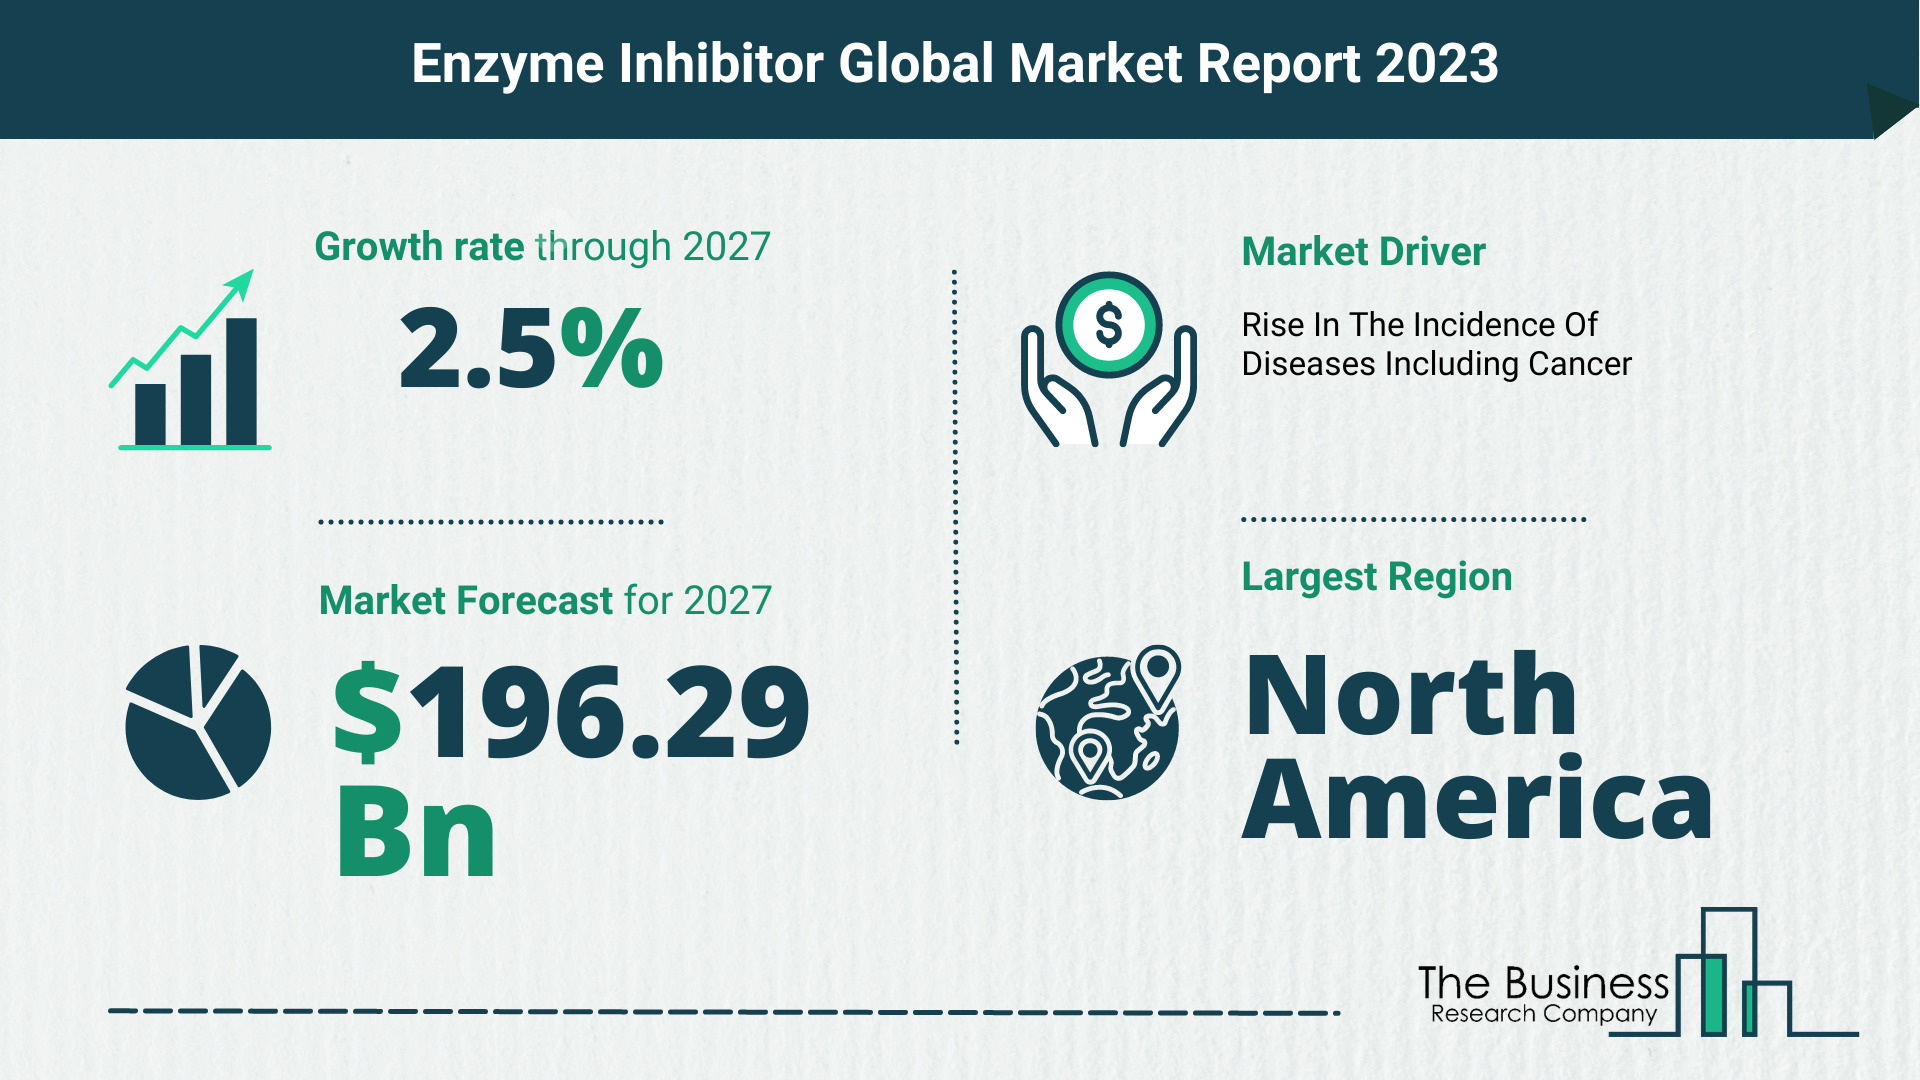 Global Enzyme Inhibitor Market Size